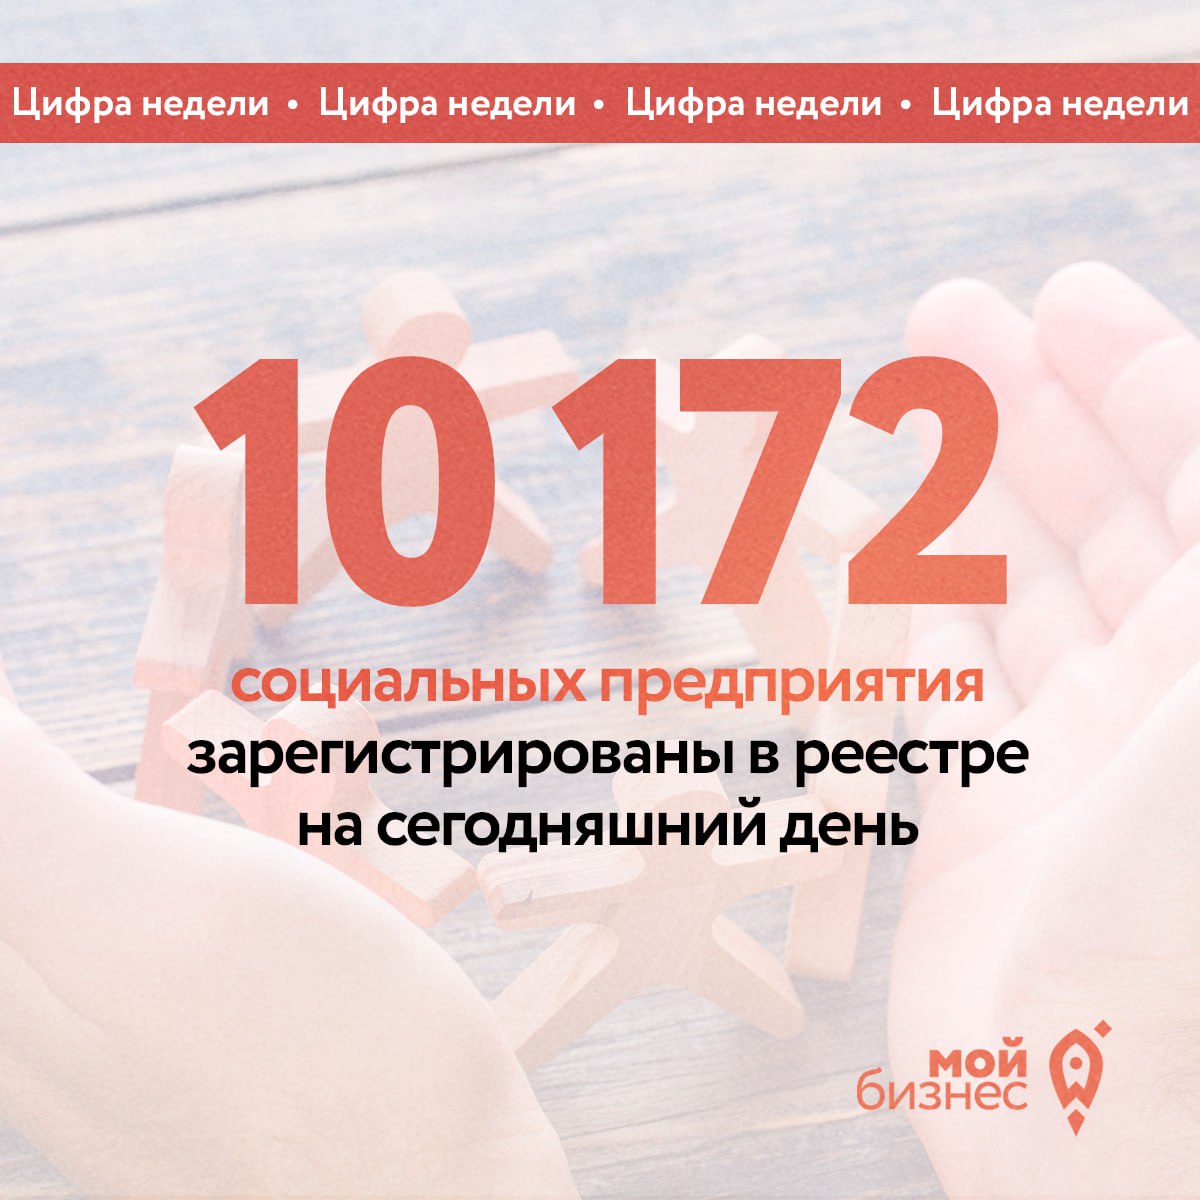 Сегодня в России более 10 тысяч социальных предпринимателей